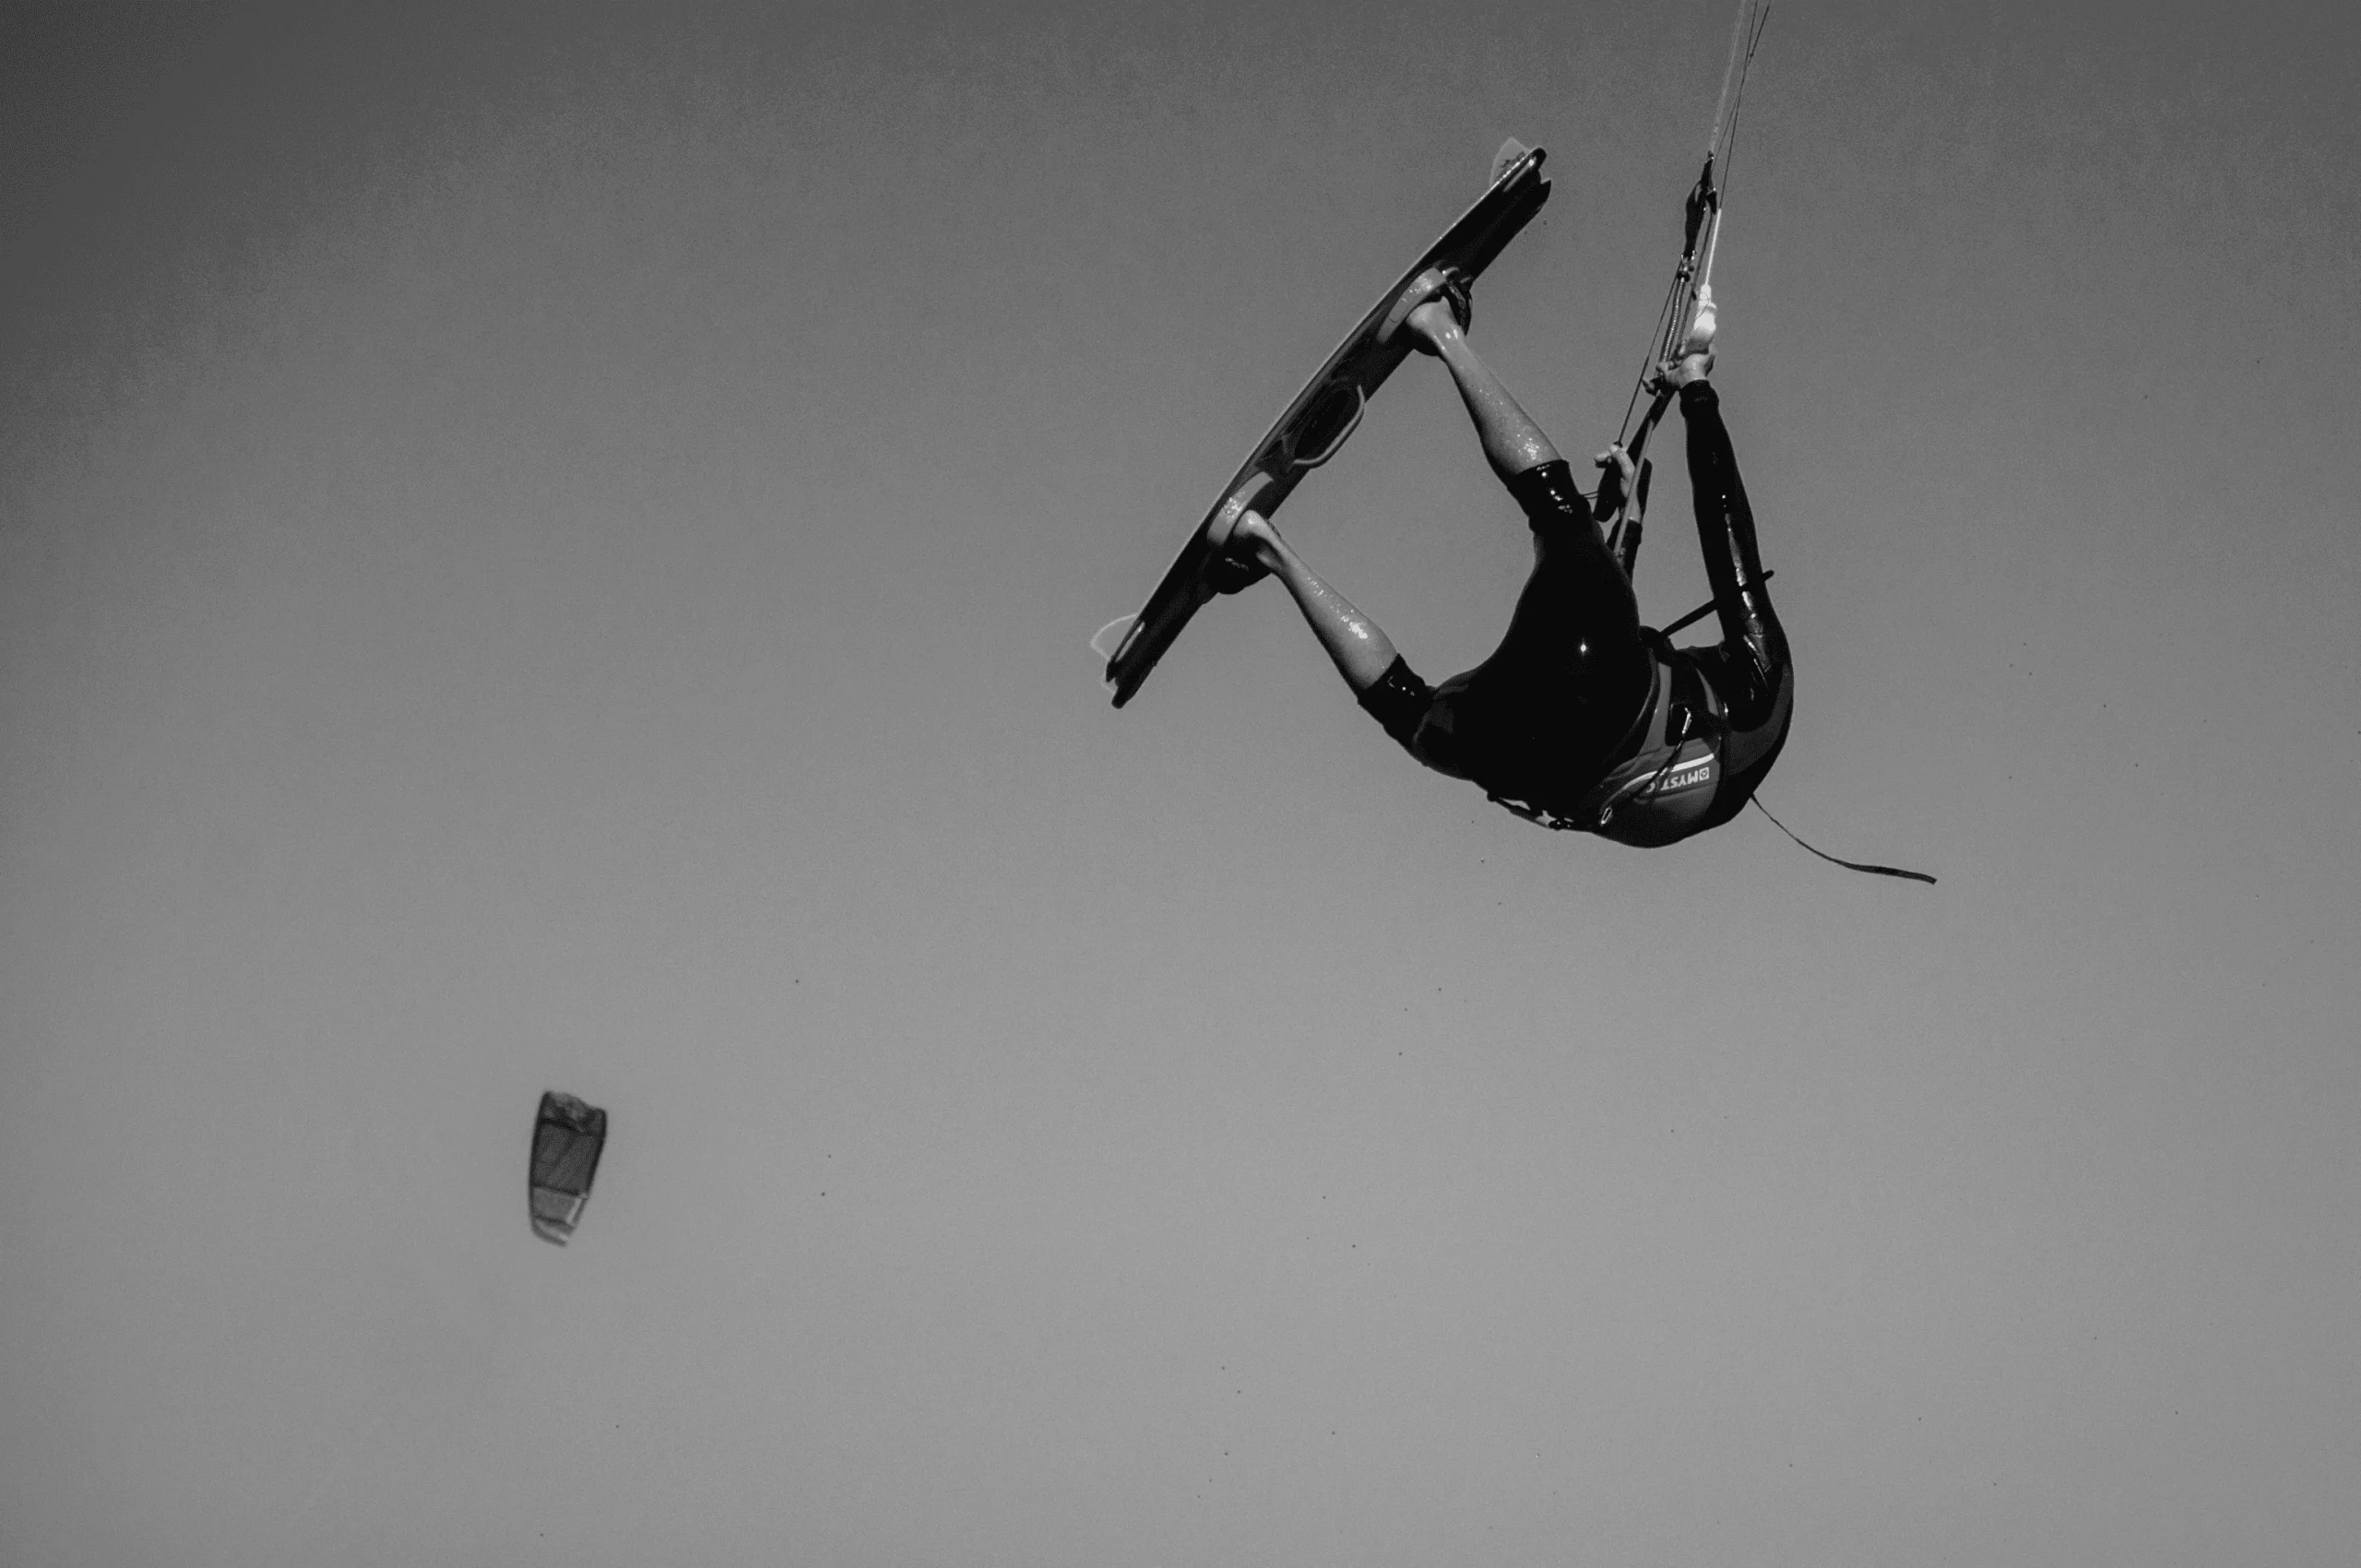 Kite surf. Un kitesurfeur vole sur sa planche dans les airs entouré de cerfs-volants de traction